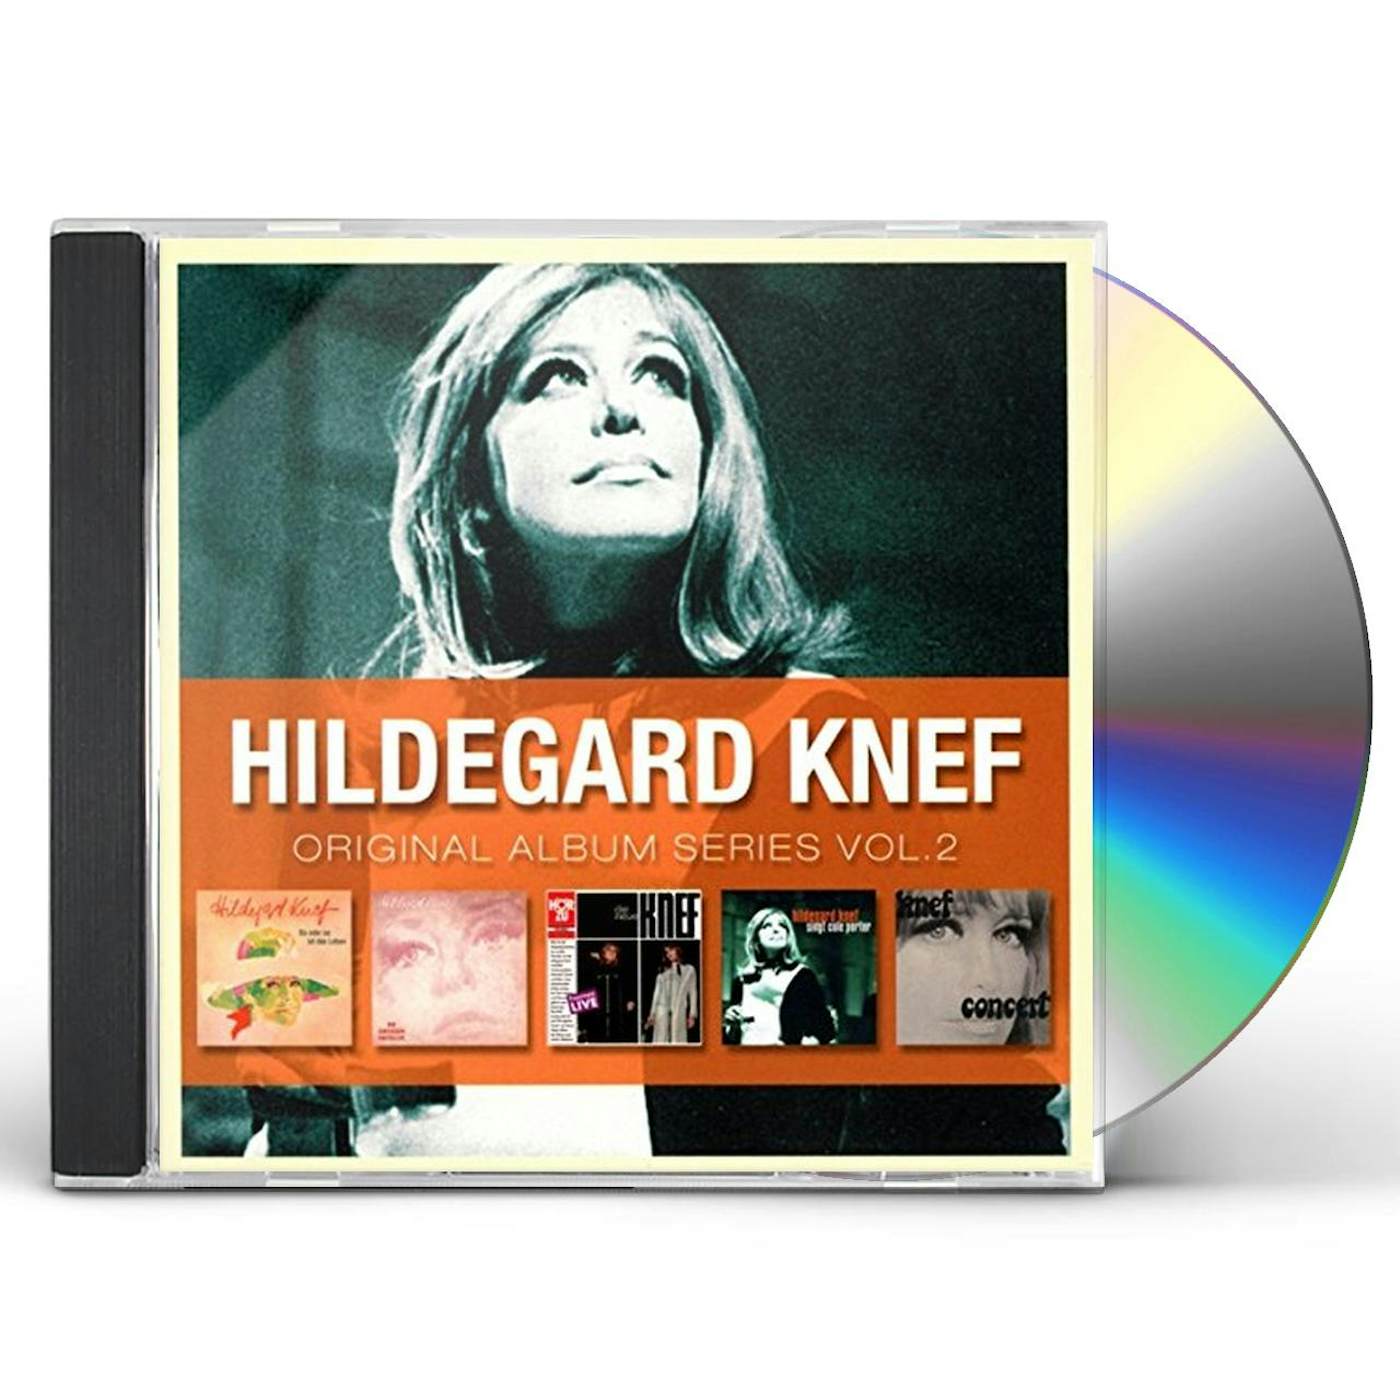 Hildegard Knef ORIGINAL ALBUM SERIES VOL 2 CD